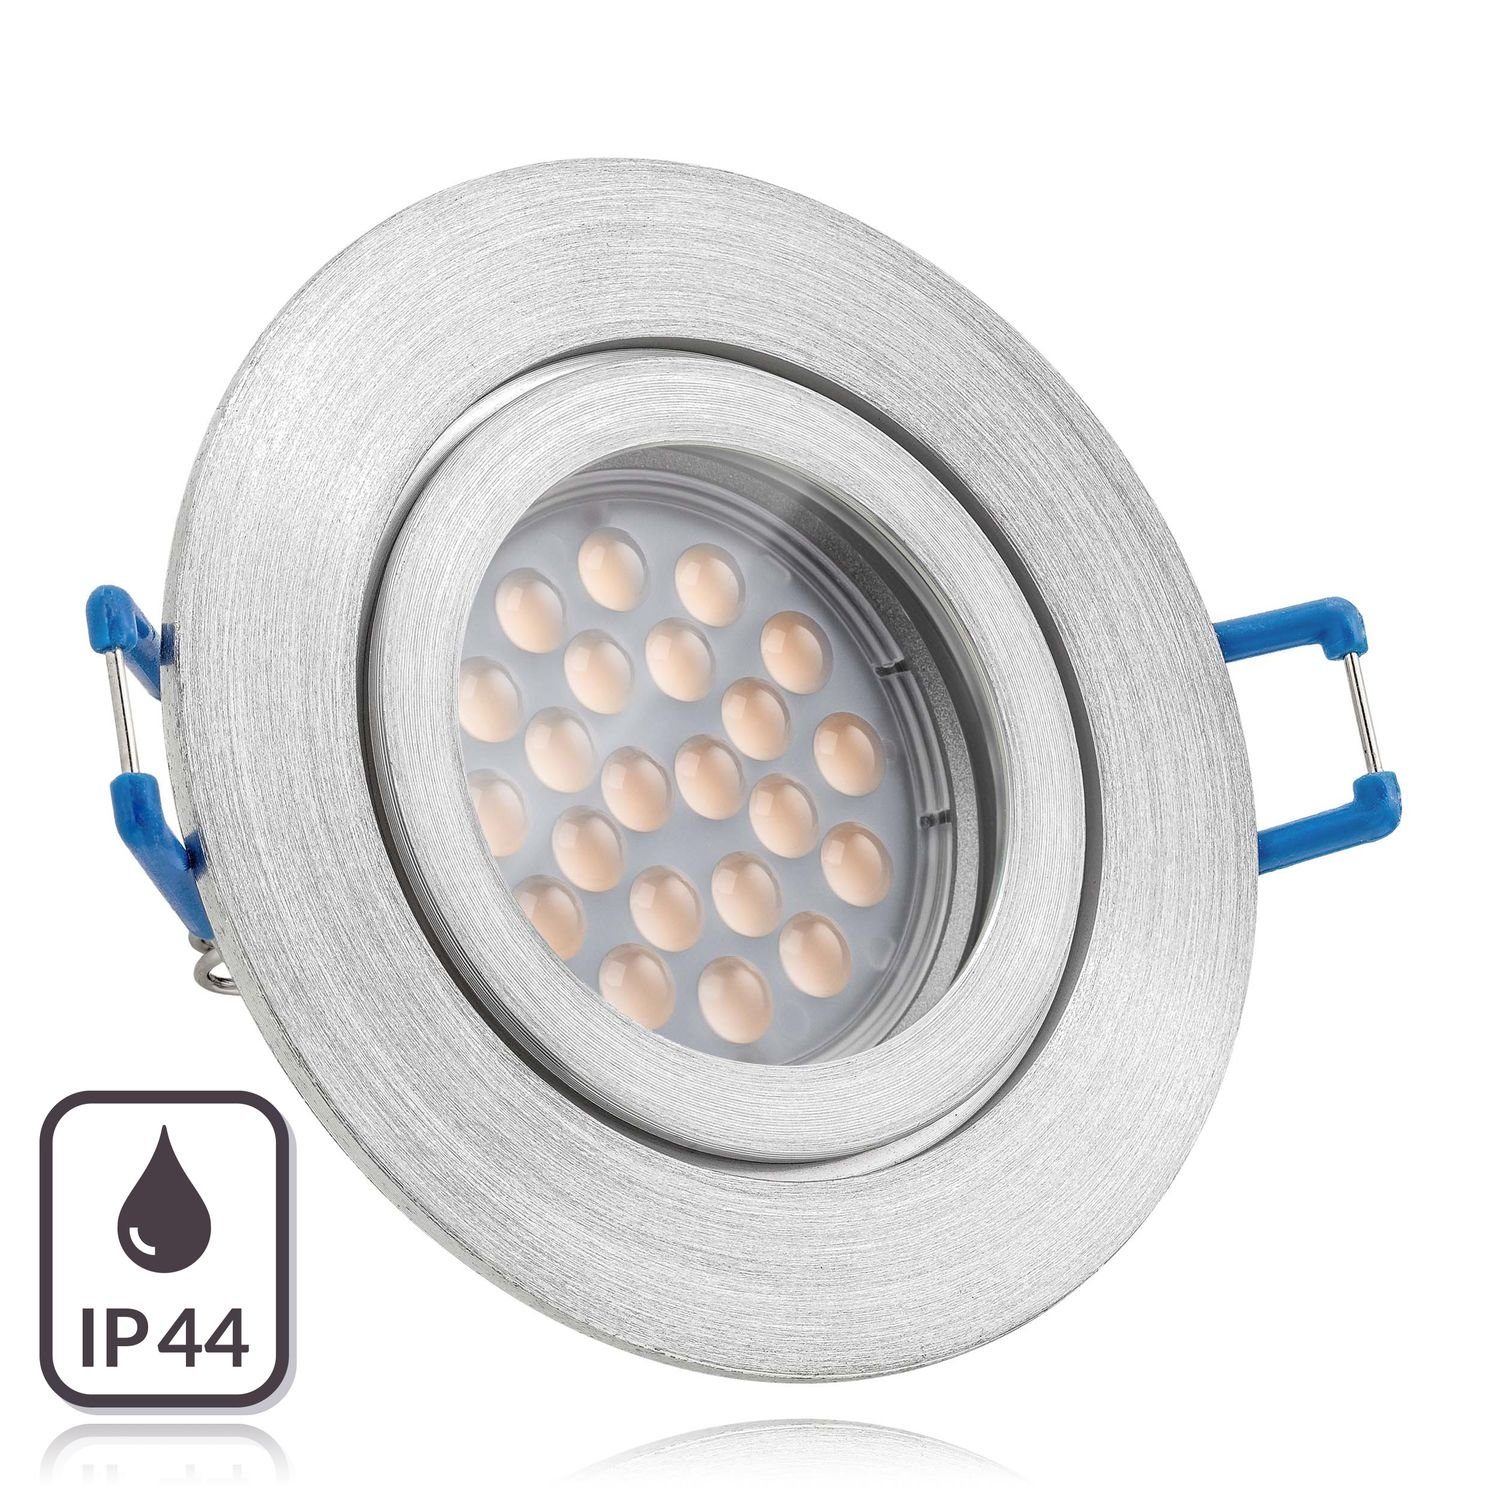 LEDANDO LED Einbaustrahler IP44 LED Einbaustrahler Set Aluminium natur mit  LED GU10 Markenstrahler von LEDANDO - 5W - warmweiss - 60° Abstrahlwinkel -  Feuchtraum / Badezimmer - 50W Ersatz - A+ - LED Spot 5 Watt - Einbauleuchte  rund